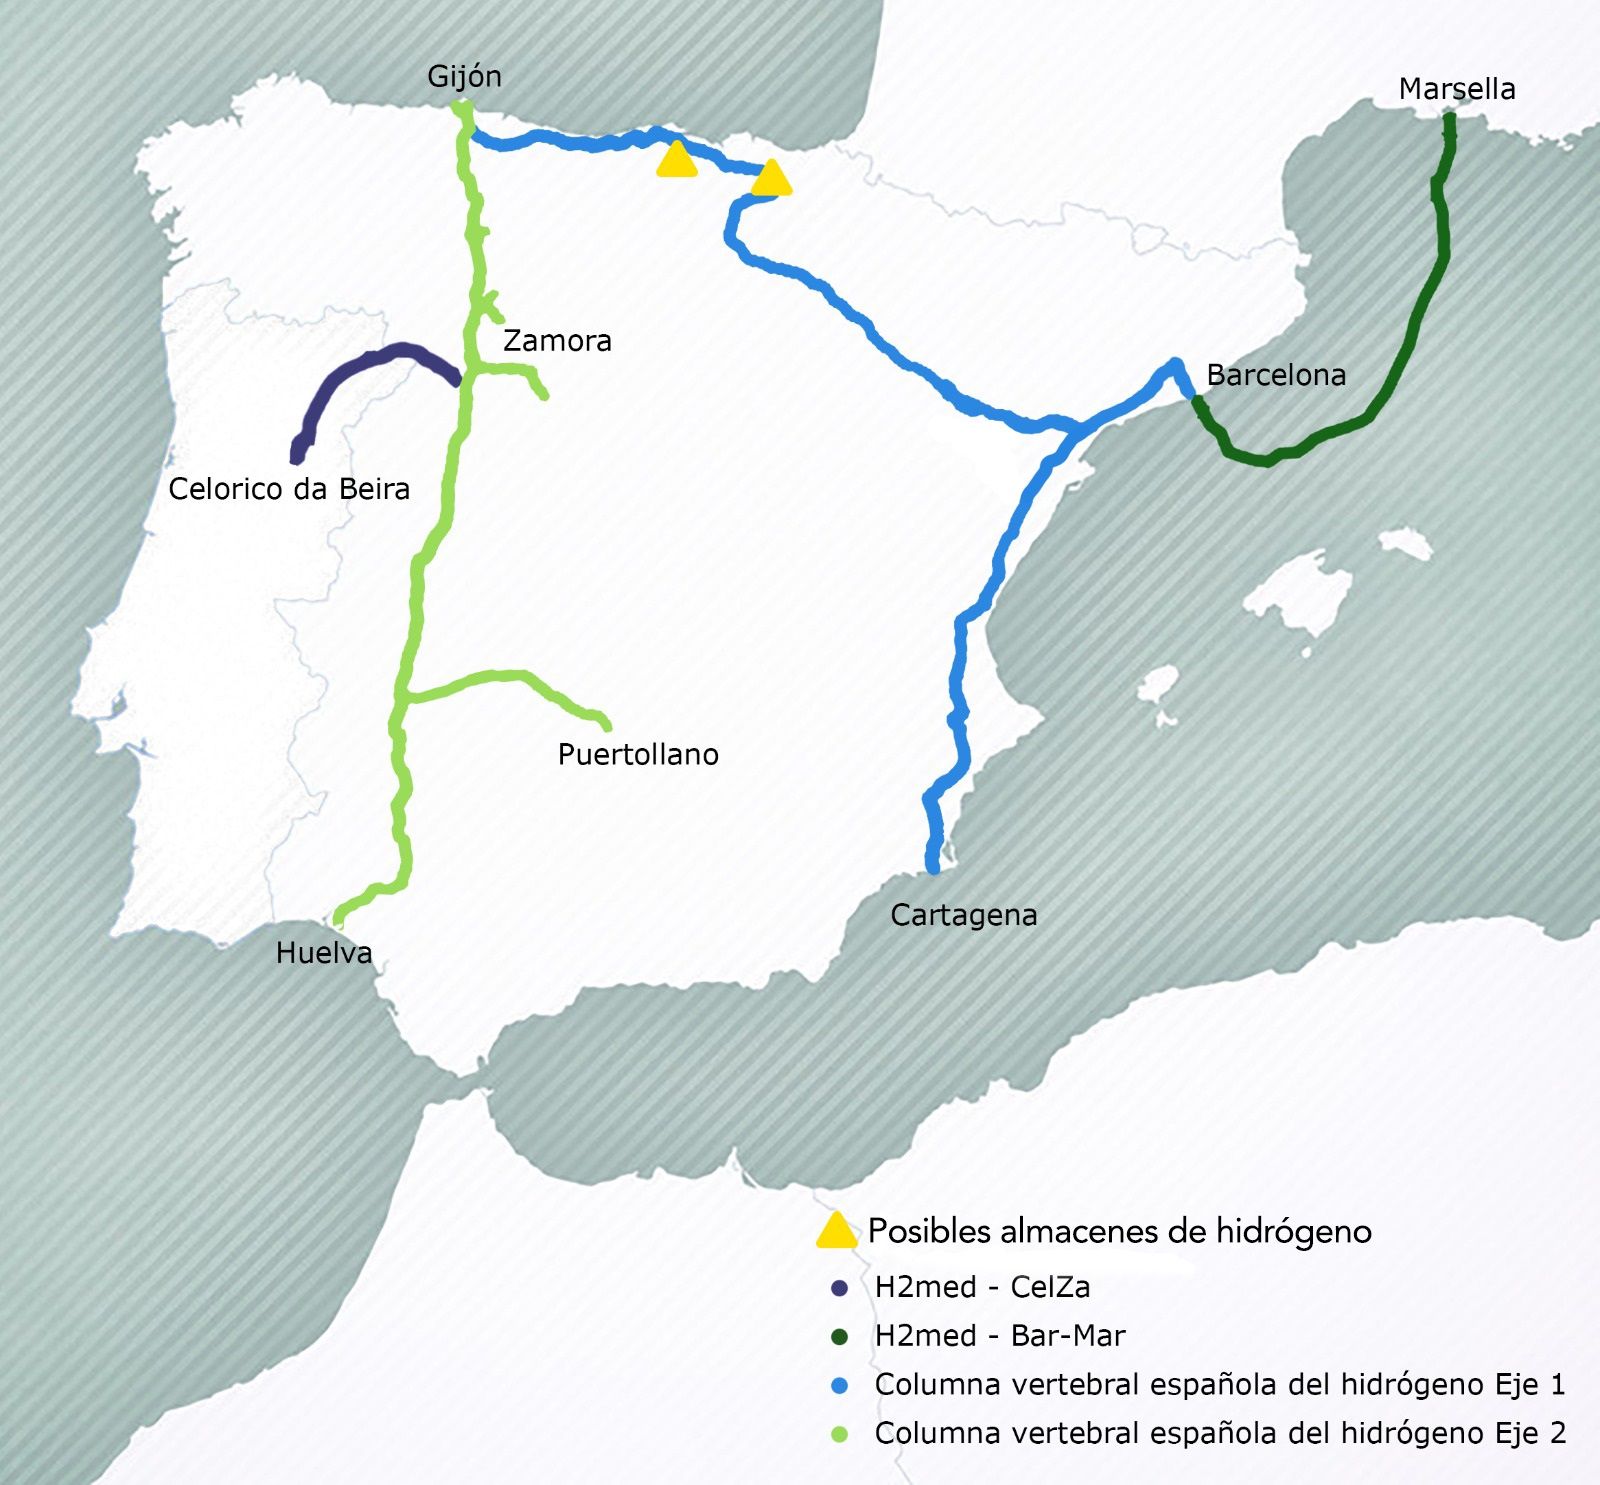 El mapa del hidrógeno en España